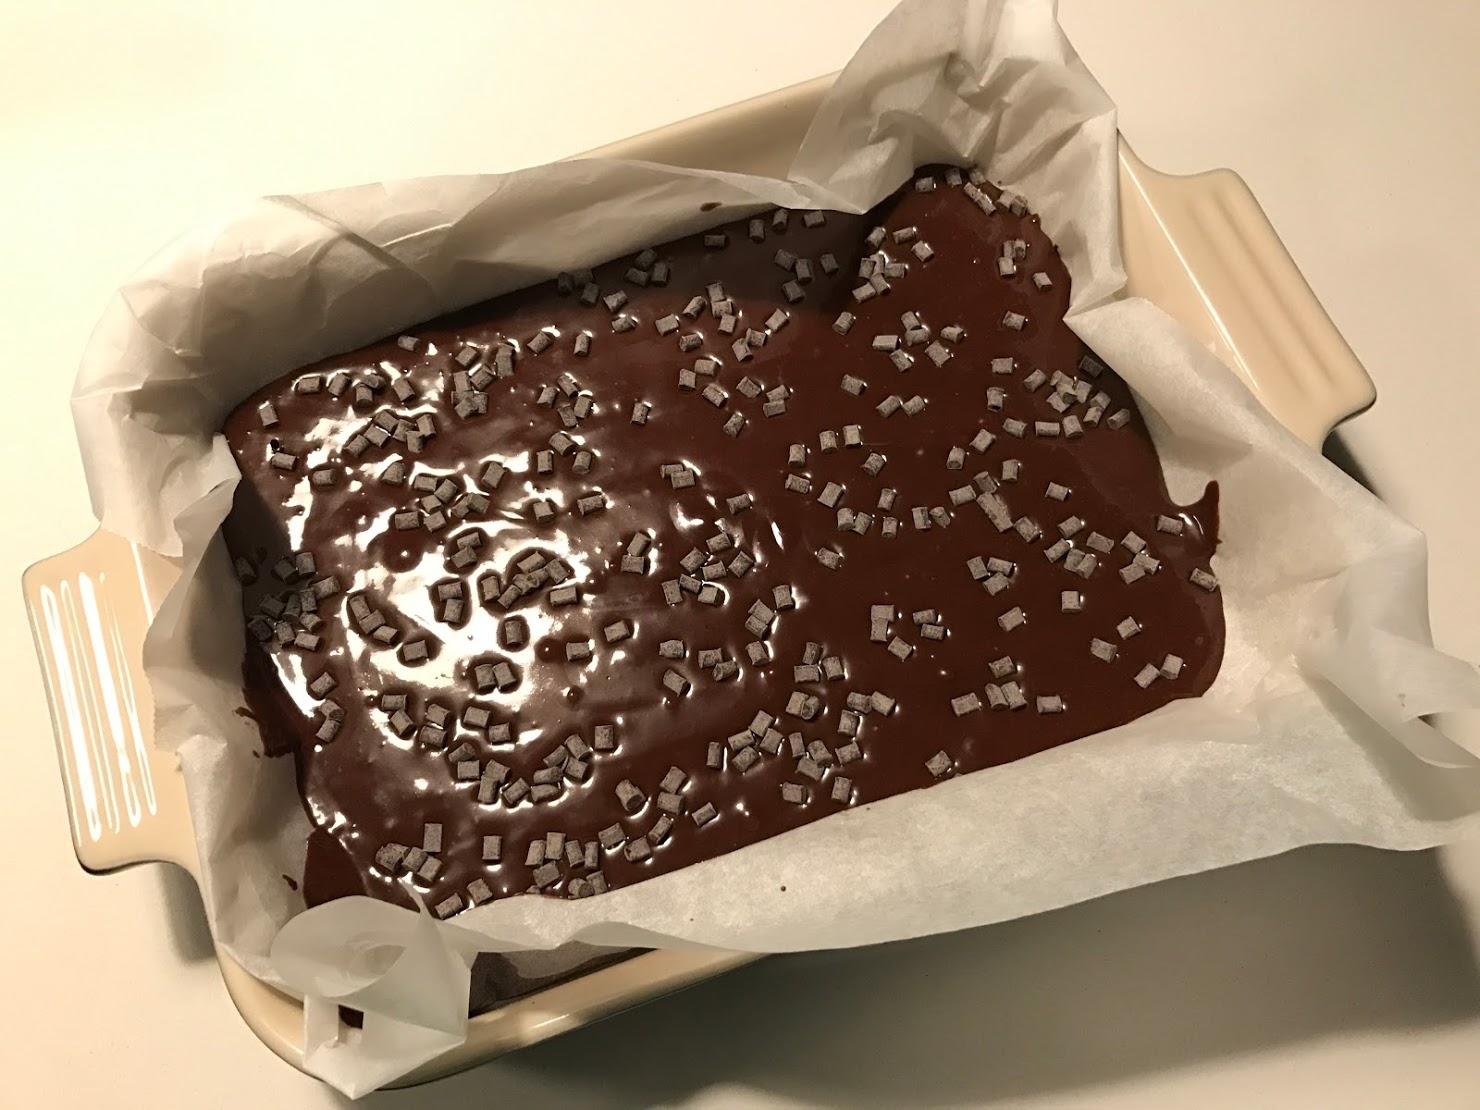 Verdens bedste chokoladekage opskrift